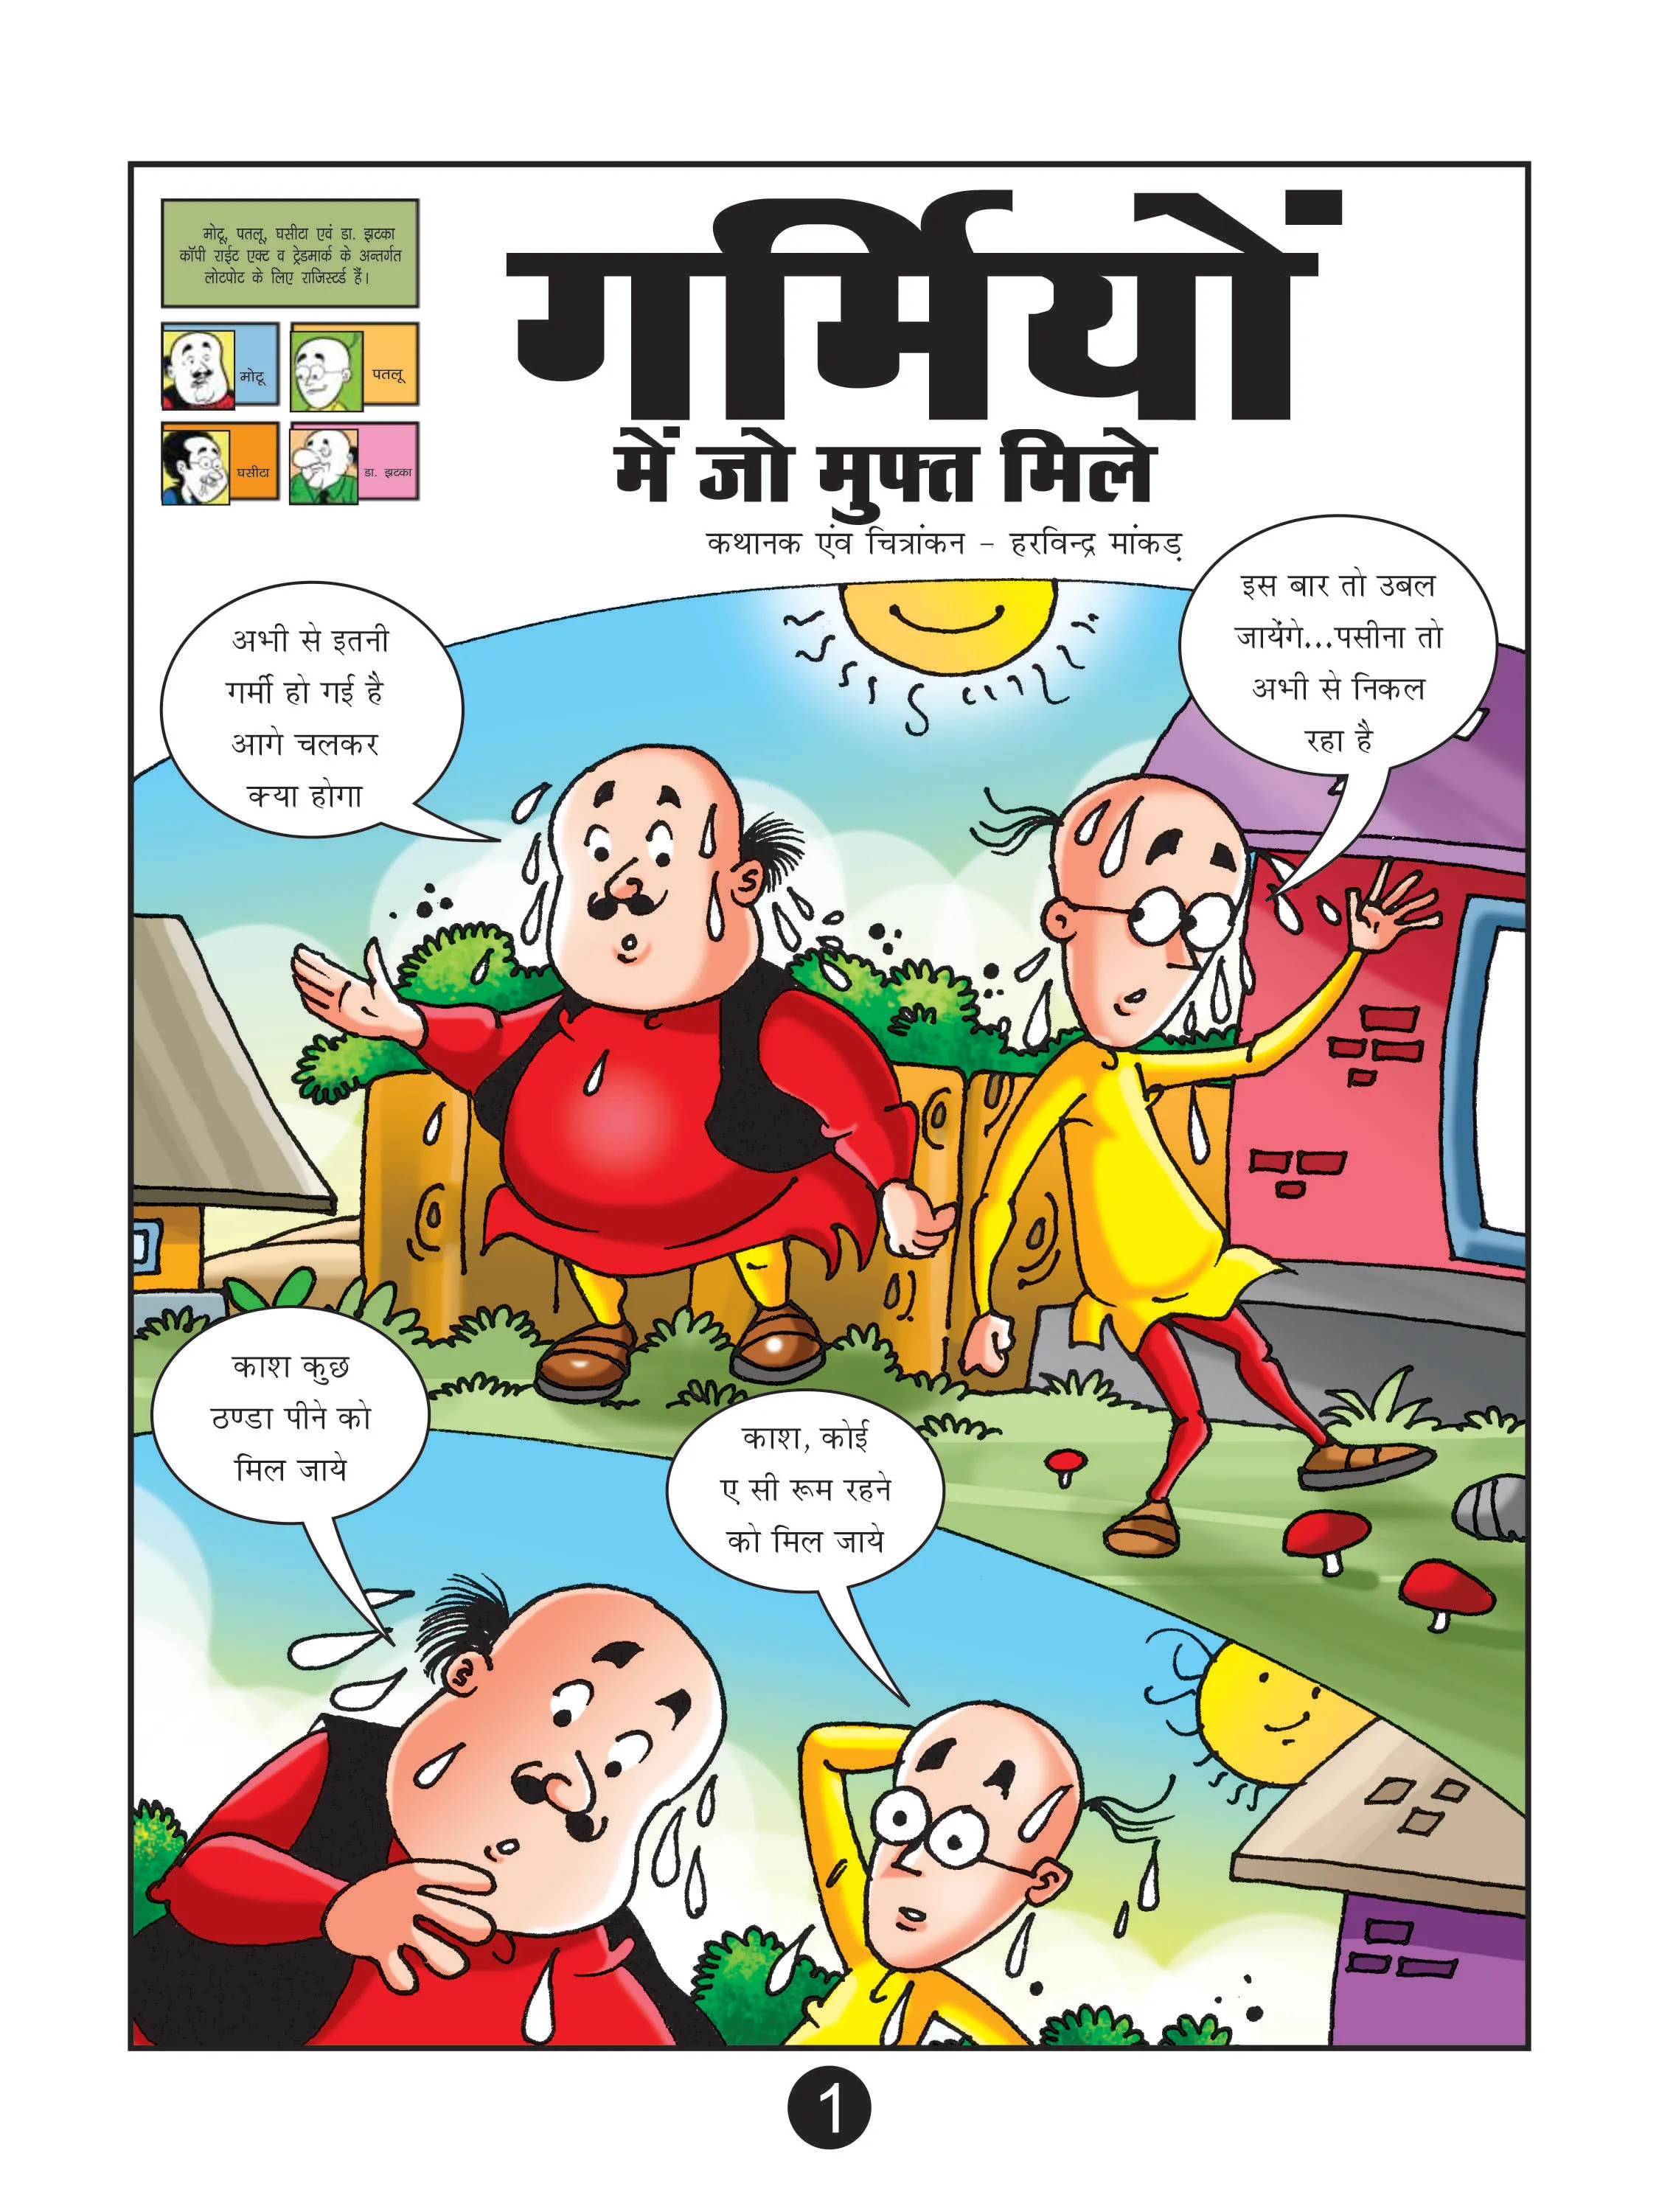 Lotpot E-Comics cartoon character Motu Patlu